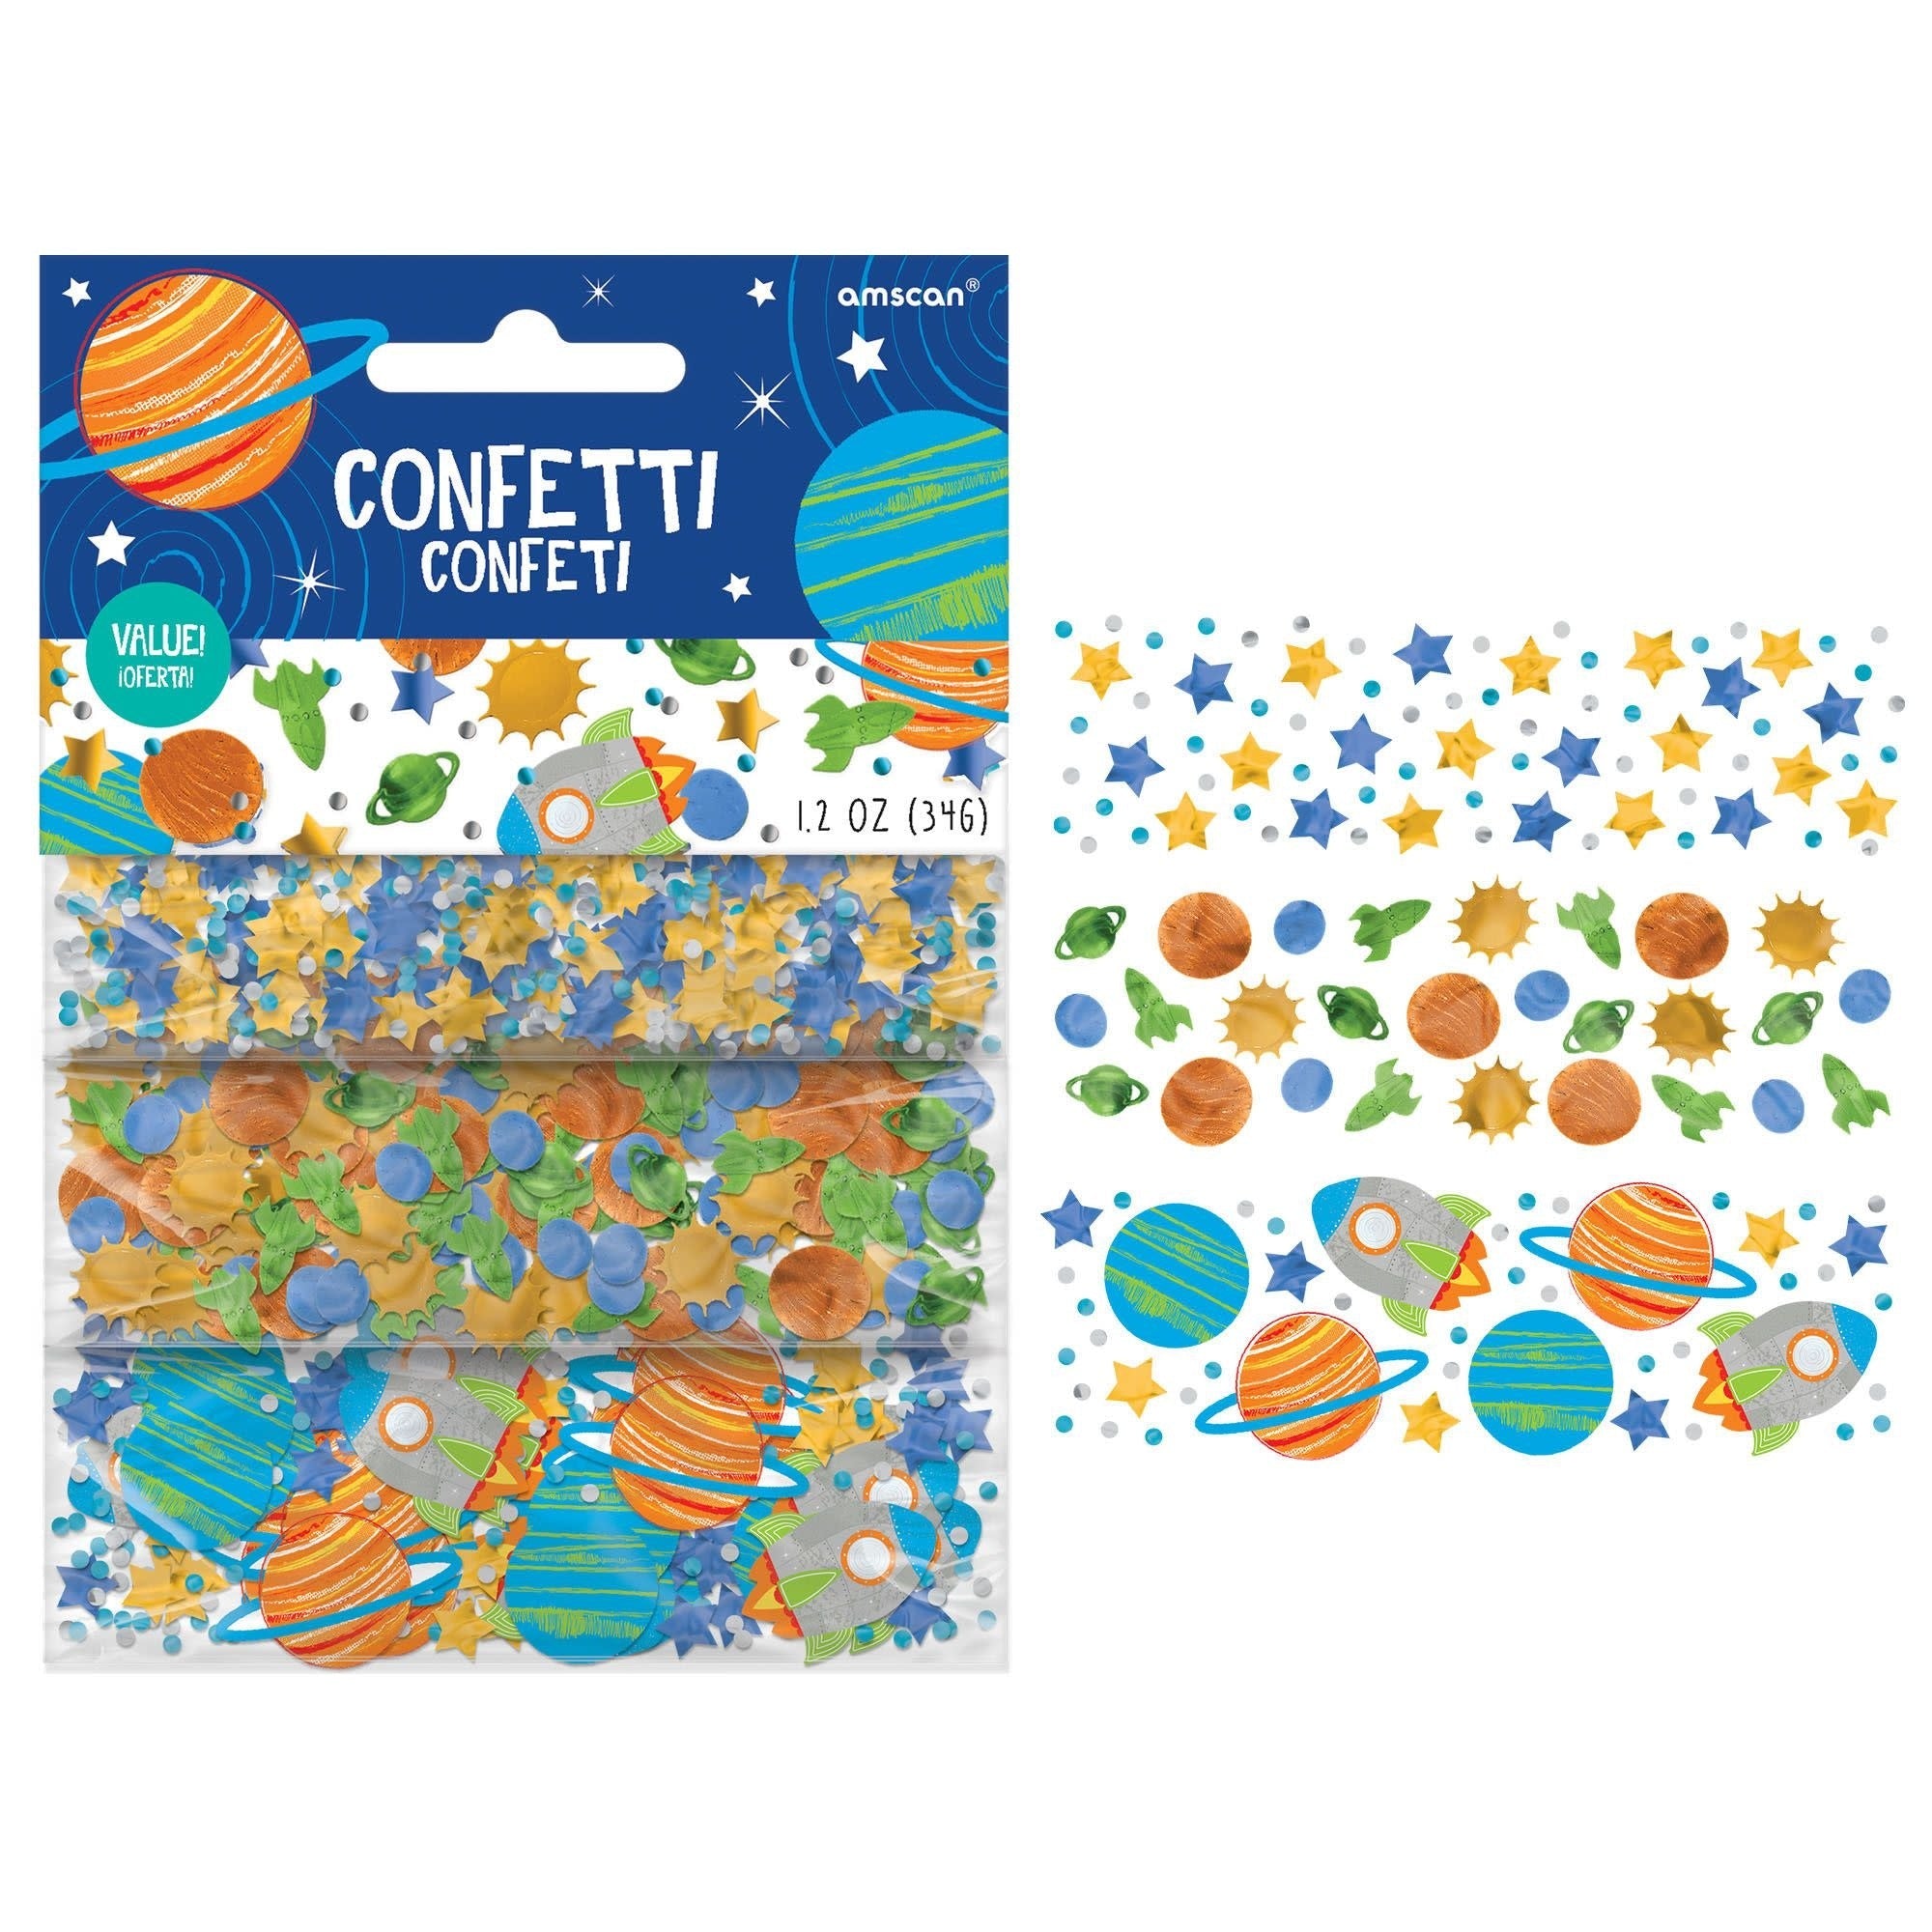 Confettis (1.2Oz) - Espace Party Shop